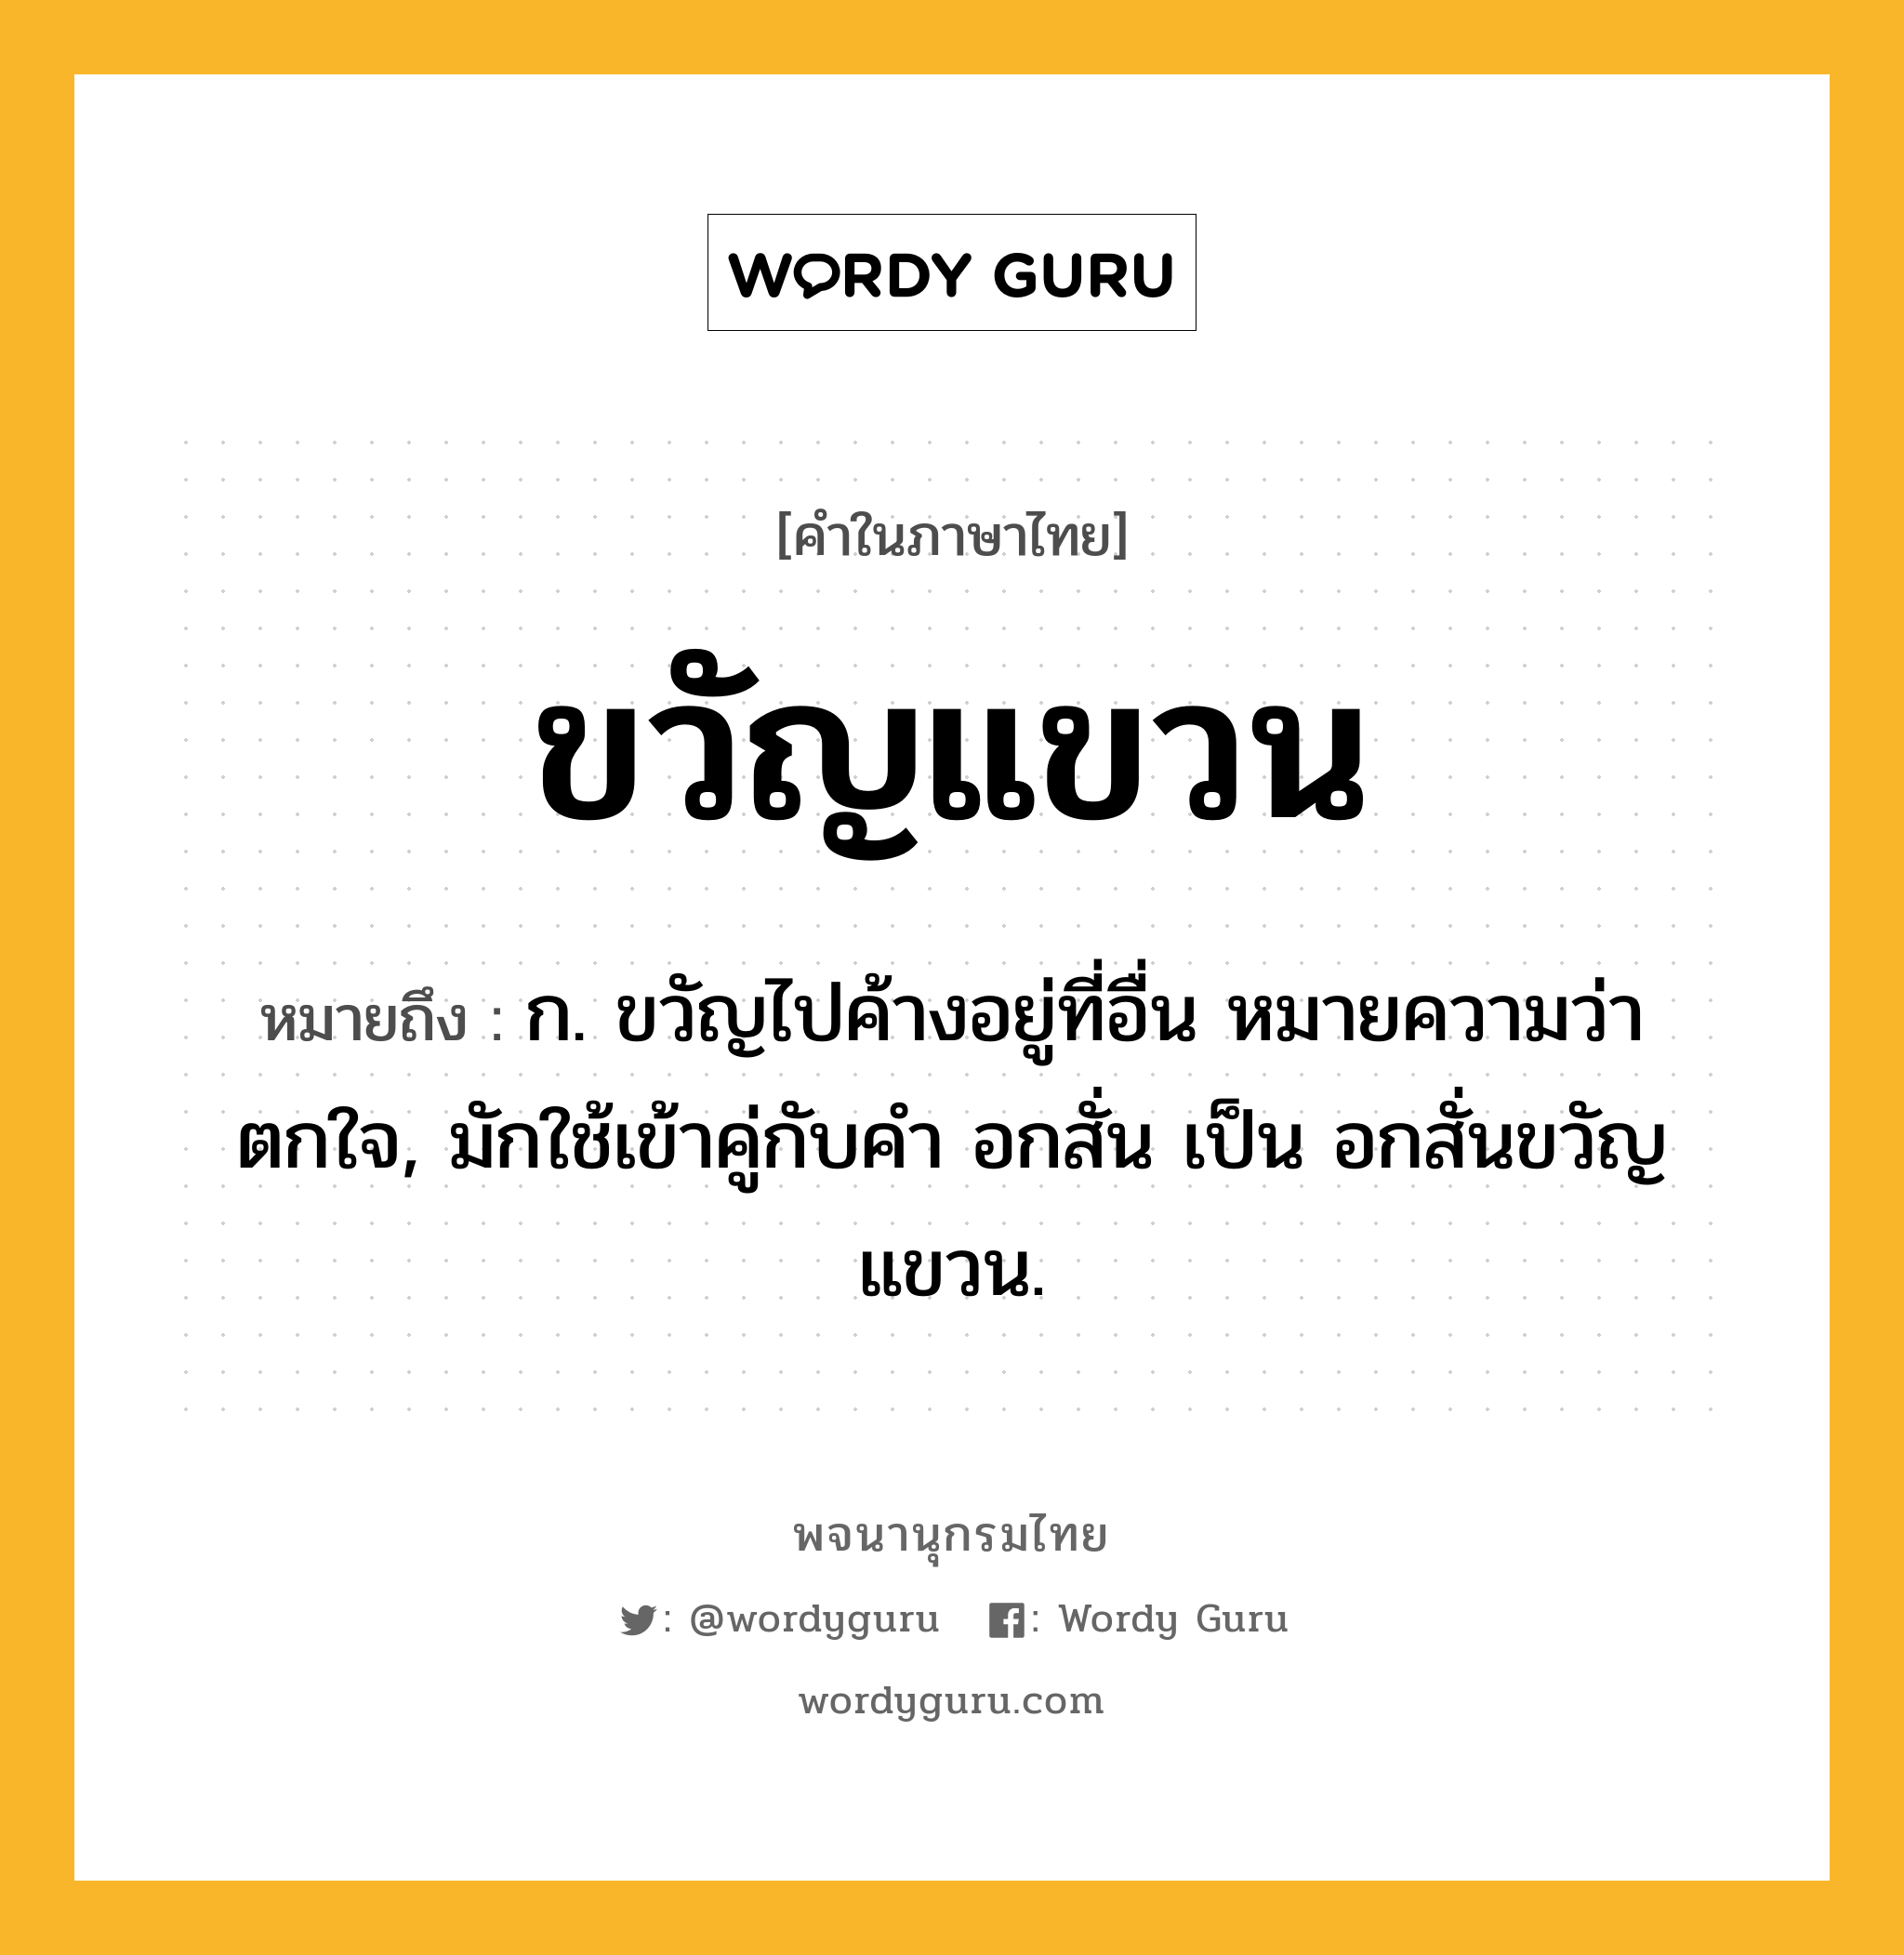 ขวัญแขวน ความหมาย หมายถึงอะไร?, คำในภาษาไทย ขวัญแขวน หมายถึง ก. ขวัญไปค้างอยู่ที่อื่น หมายความว่า ตกใจ, มักใช้เข้าคู่กับคำ อกสั่น เป็น อกสั่นขวัญแขวน.